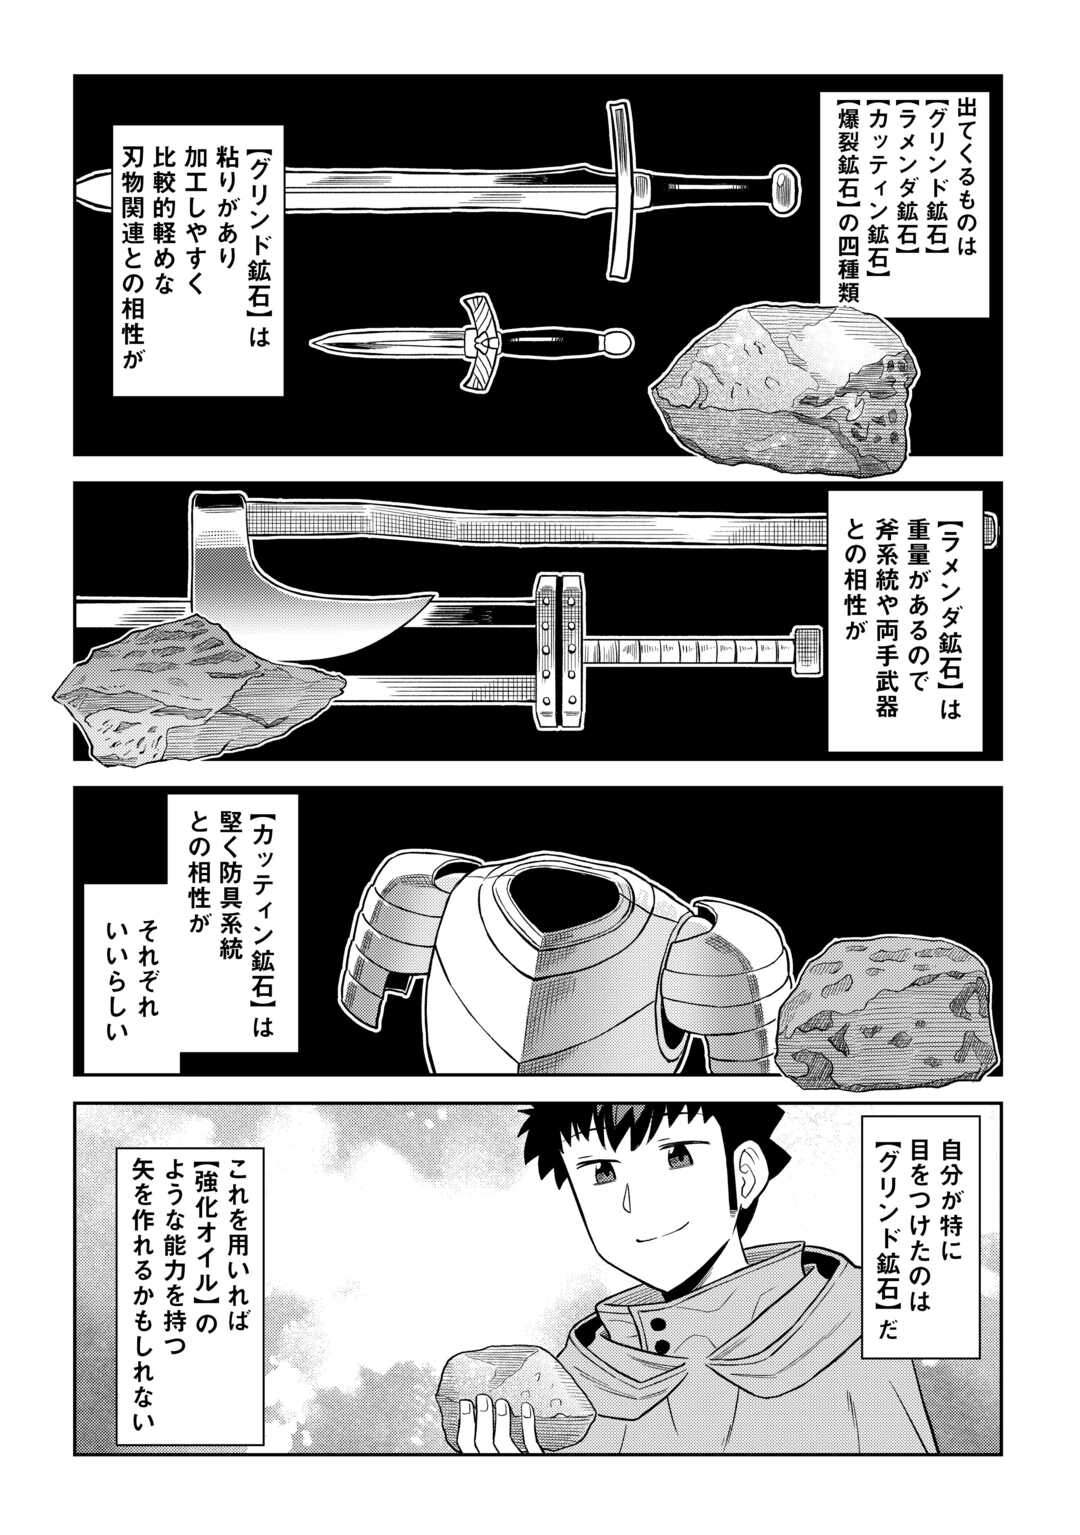 Toaru Ossan no VRMMO Katsudouki - Chapter 95 - Page 2